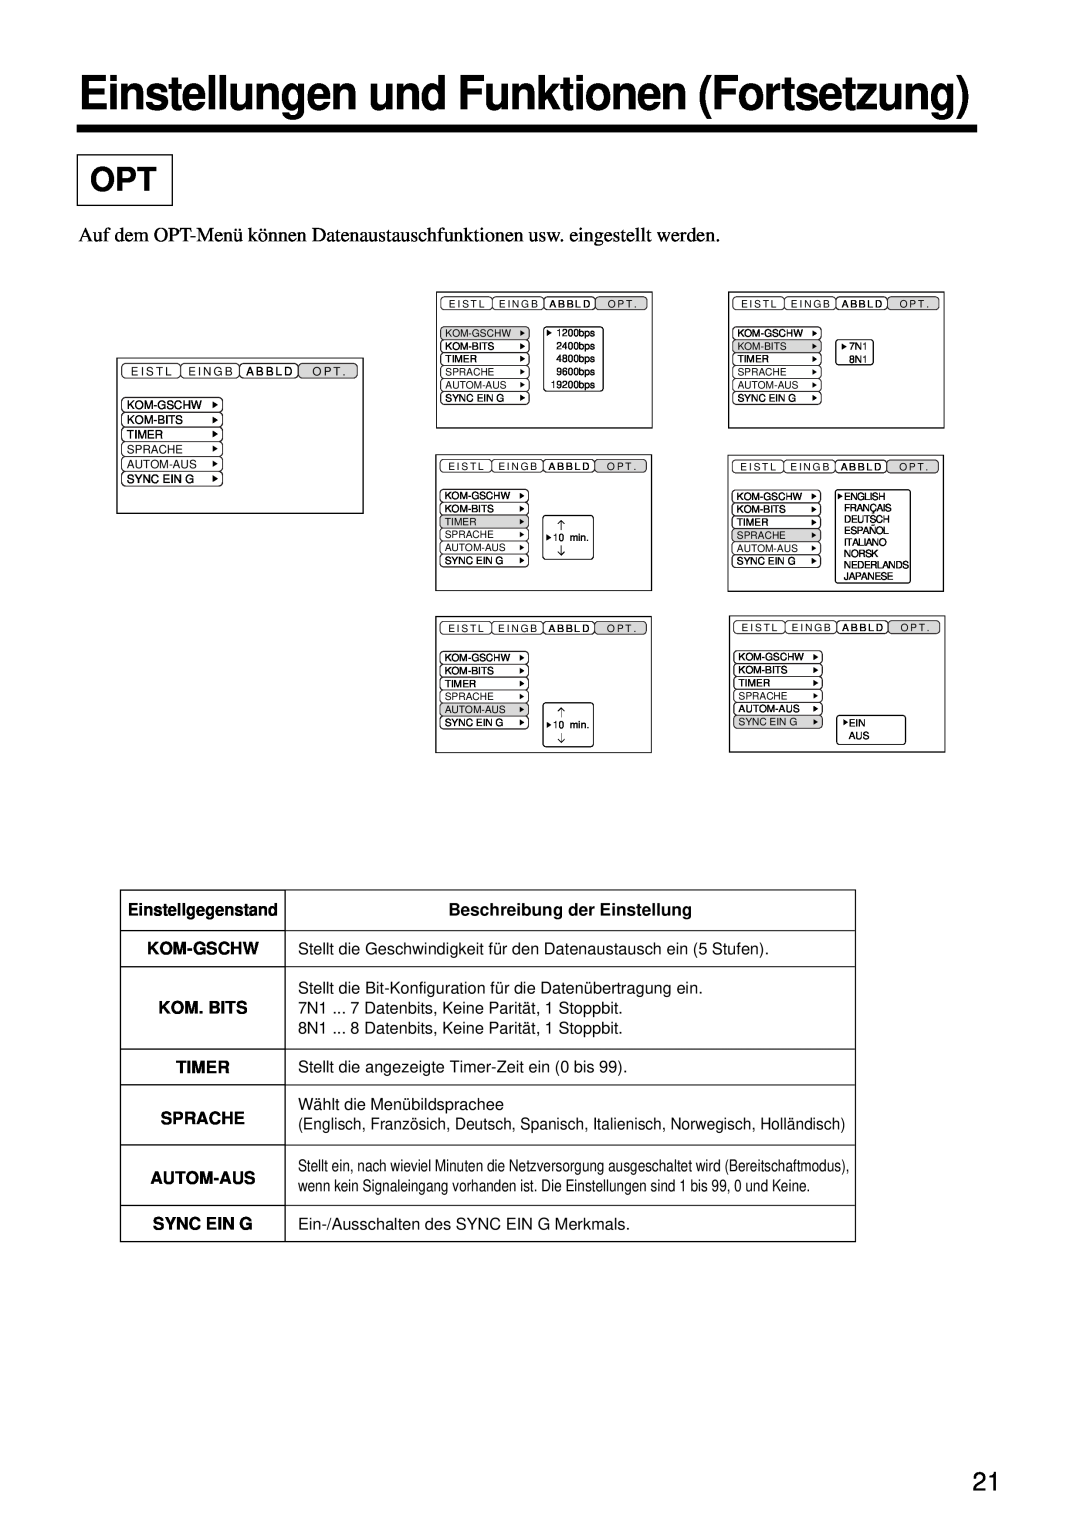 Hitachi CP-S860W Einstellungen und Funktionen Fortsetzung, Beschreibung der Einstellung, Timer, Sprache, Autom-Aus 